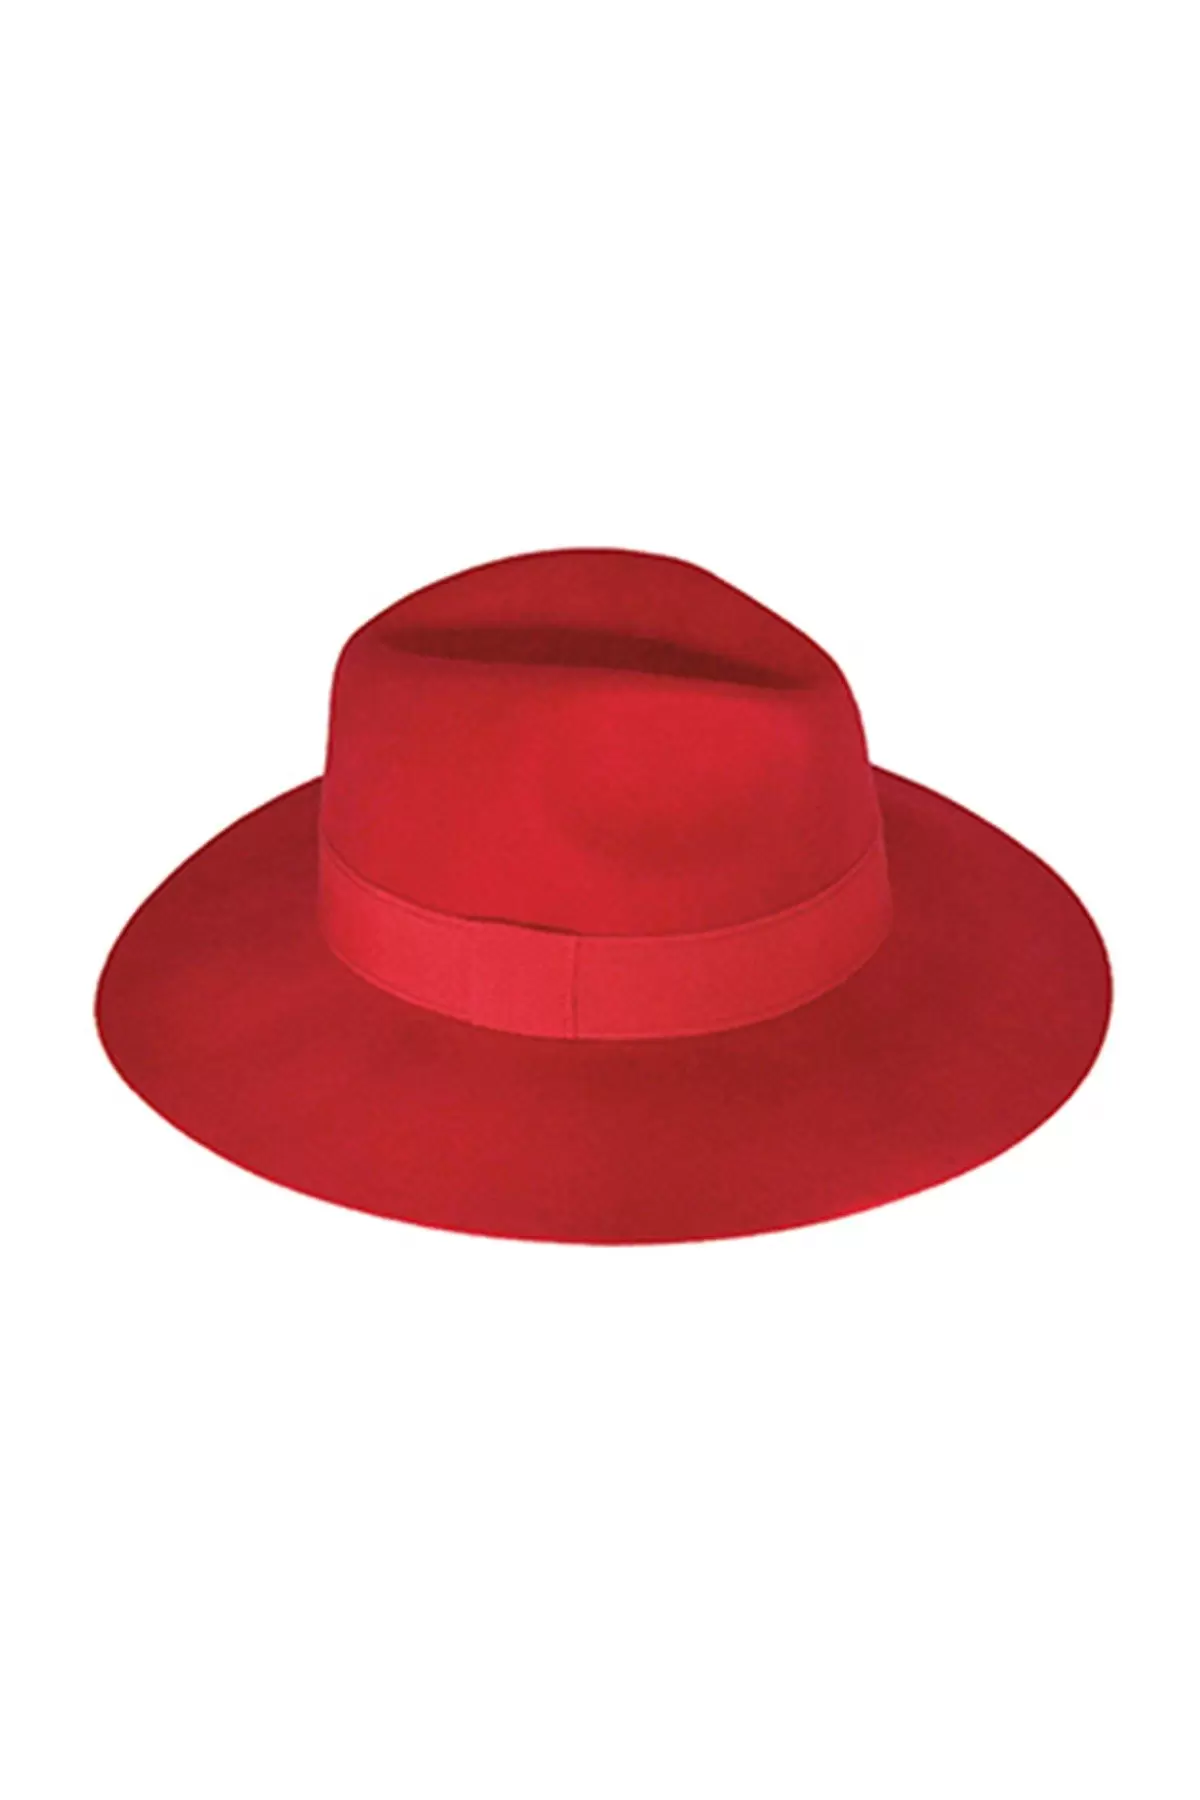 Geniş Kenarlı Kadın Kaşe Şapka Kırmızı 5747